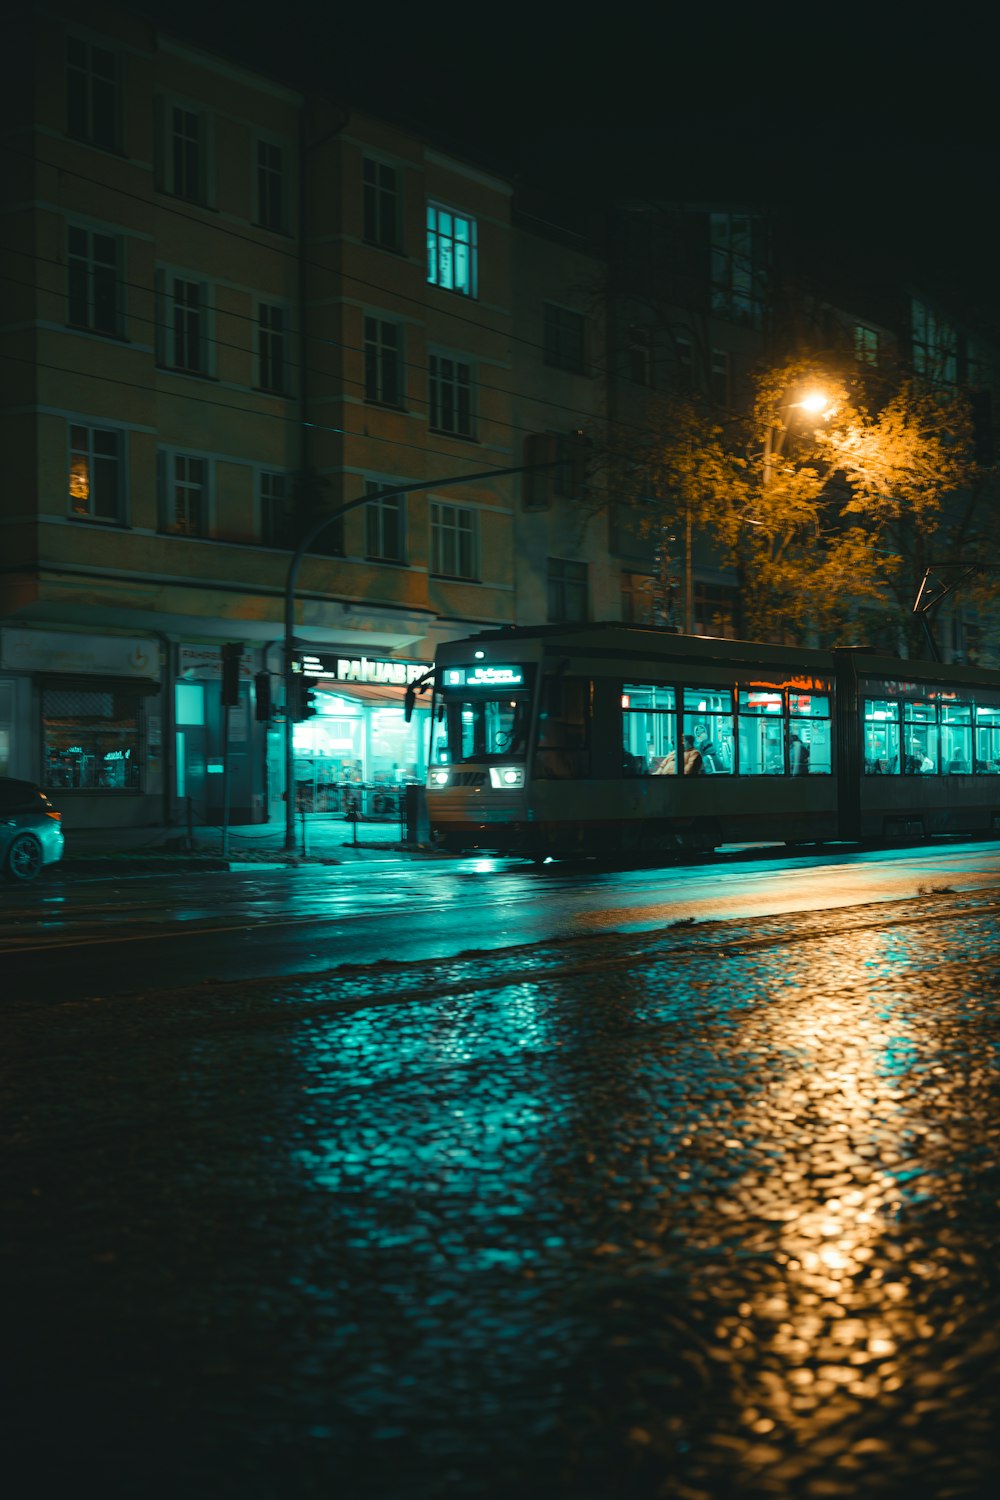 Eine nächtliche Stadtstraße mit einem Bus auf der Straße